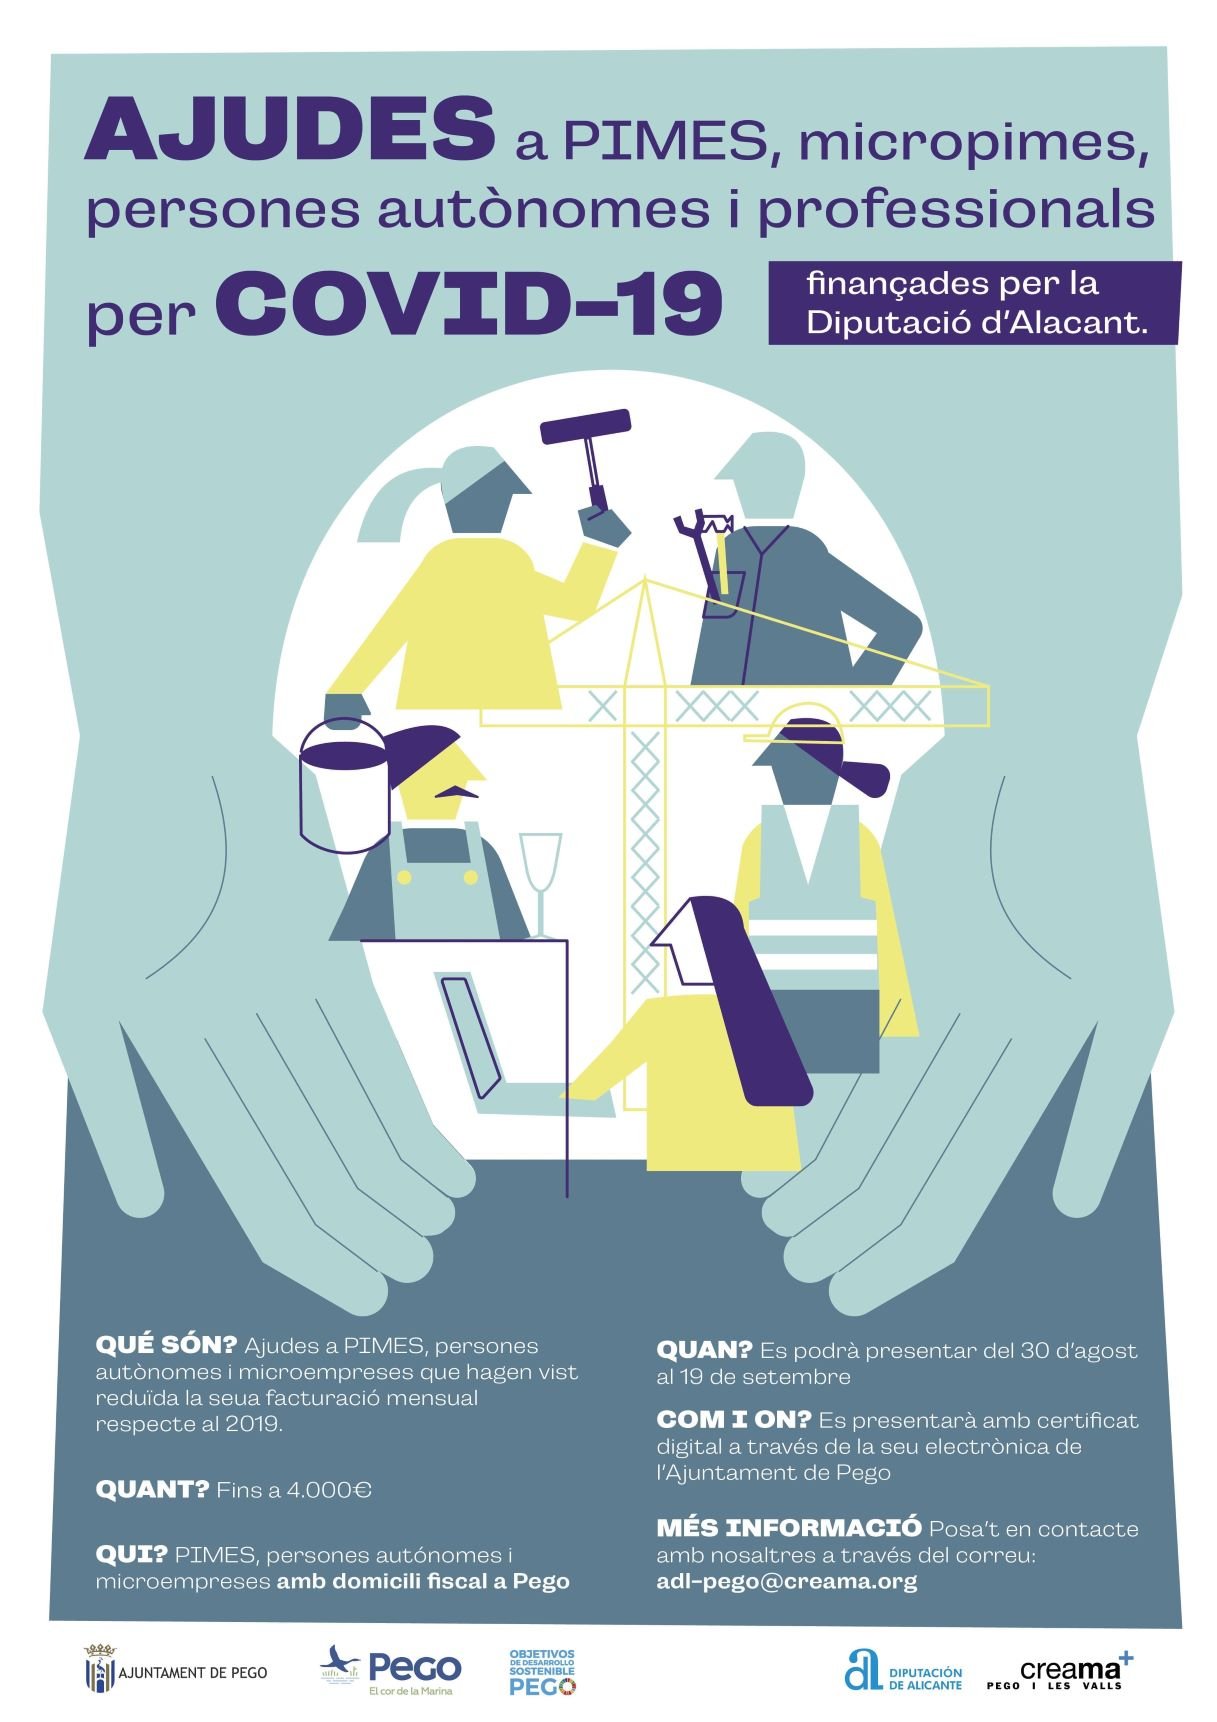 Ayudas a PYMES, MicroPYMES, personas autónomas y profesionales por COVID-19